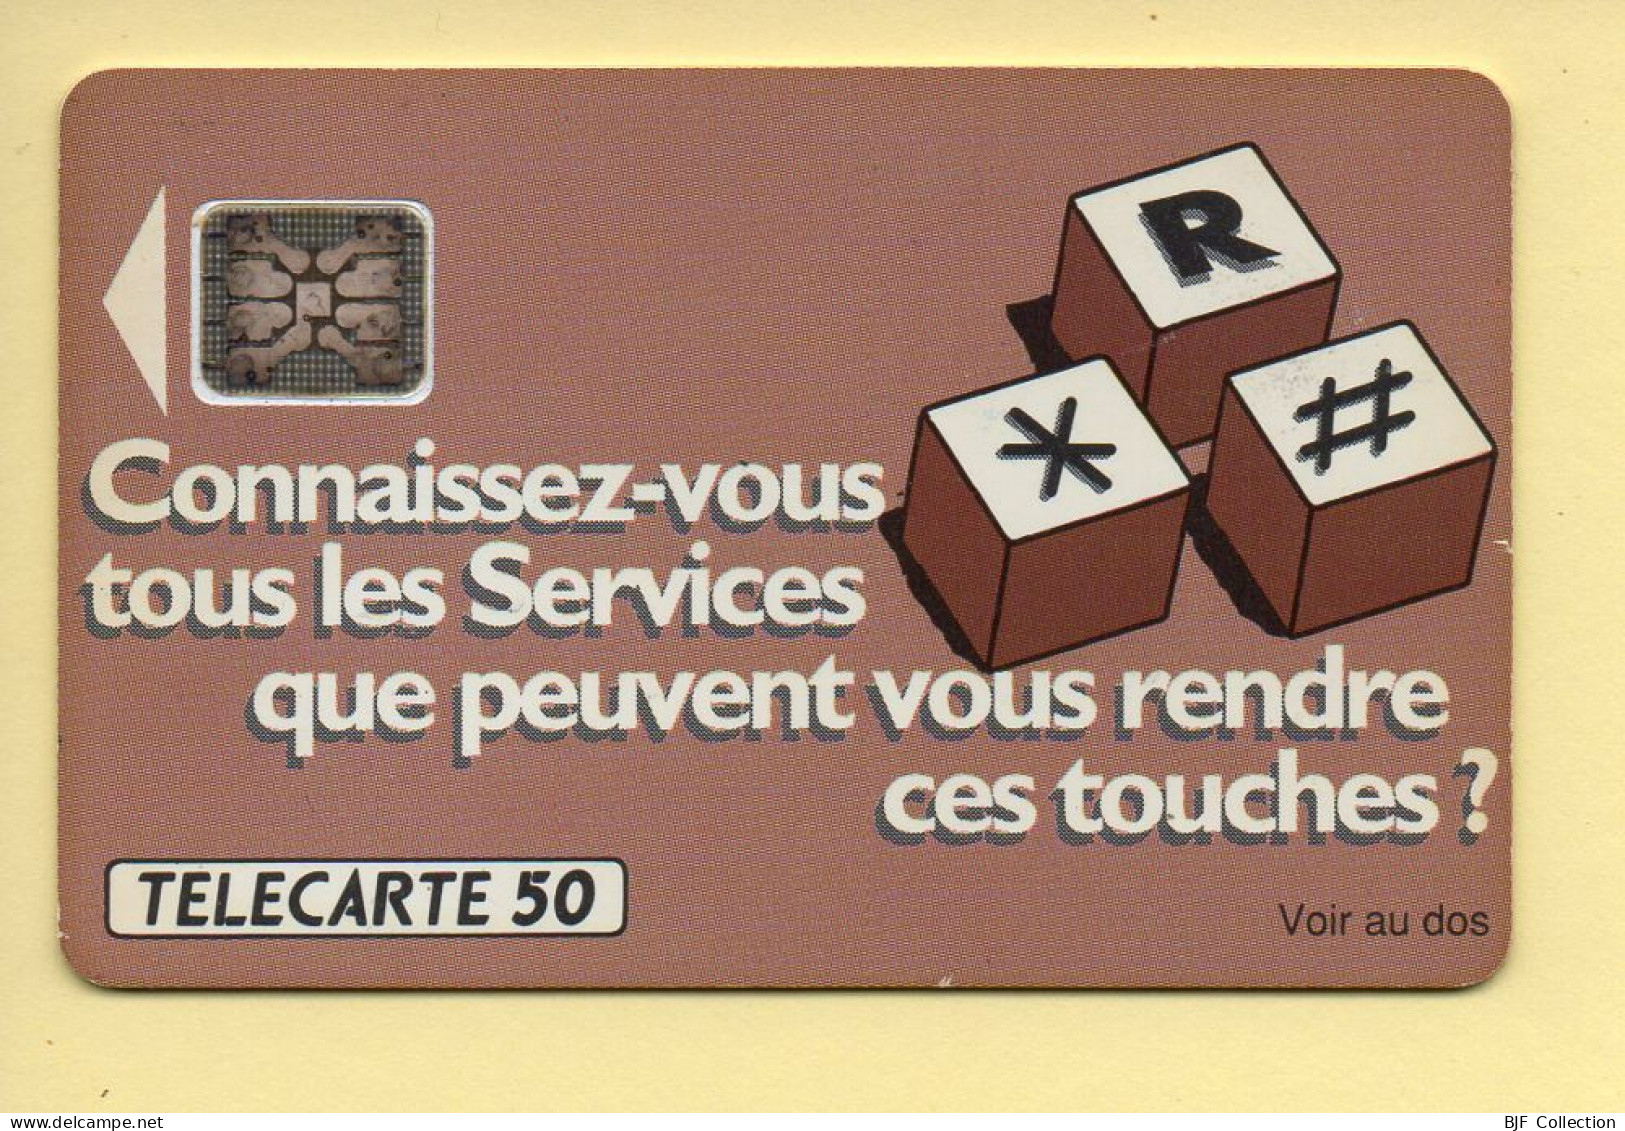 Télécarte 1991 : TRANSFERT D'APPEL 91 / 50 Unités / Numéro 34904 / 06-91 (voir Puce Et Numéro Au Dos) - 1991